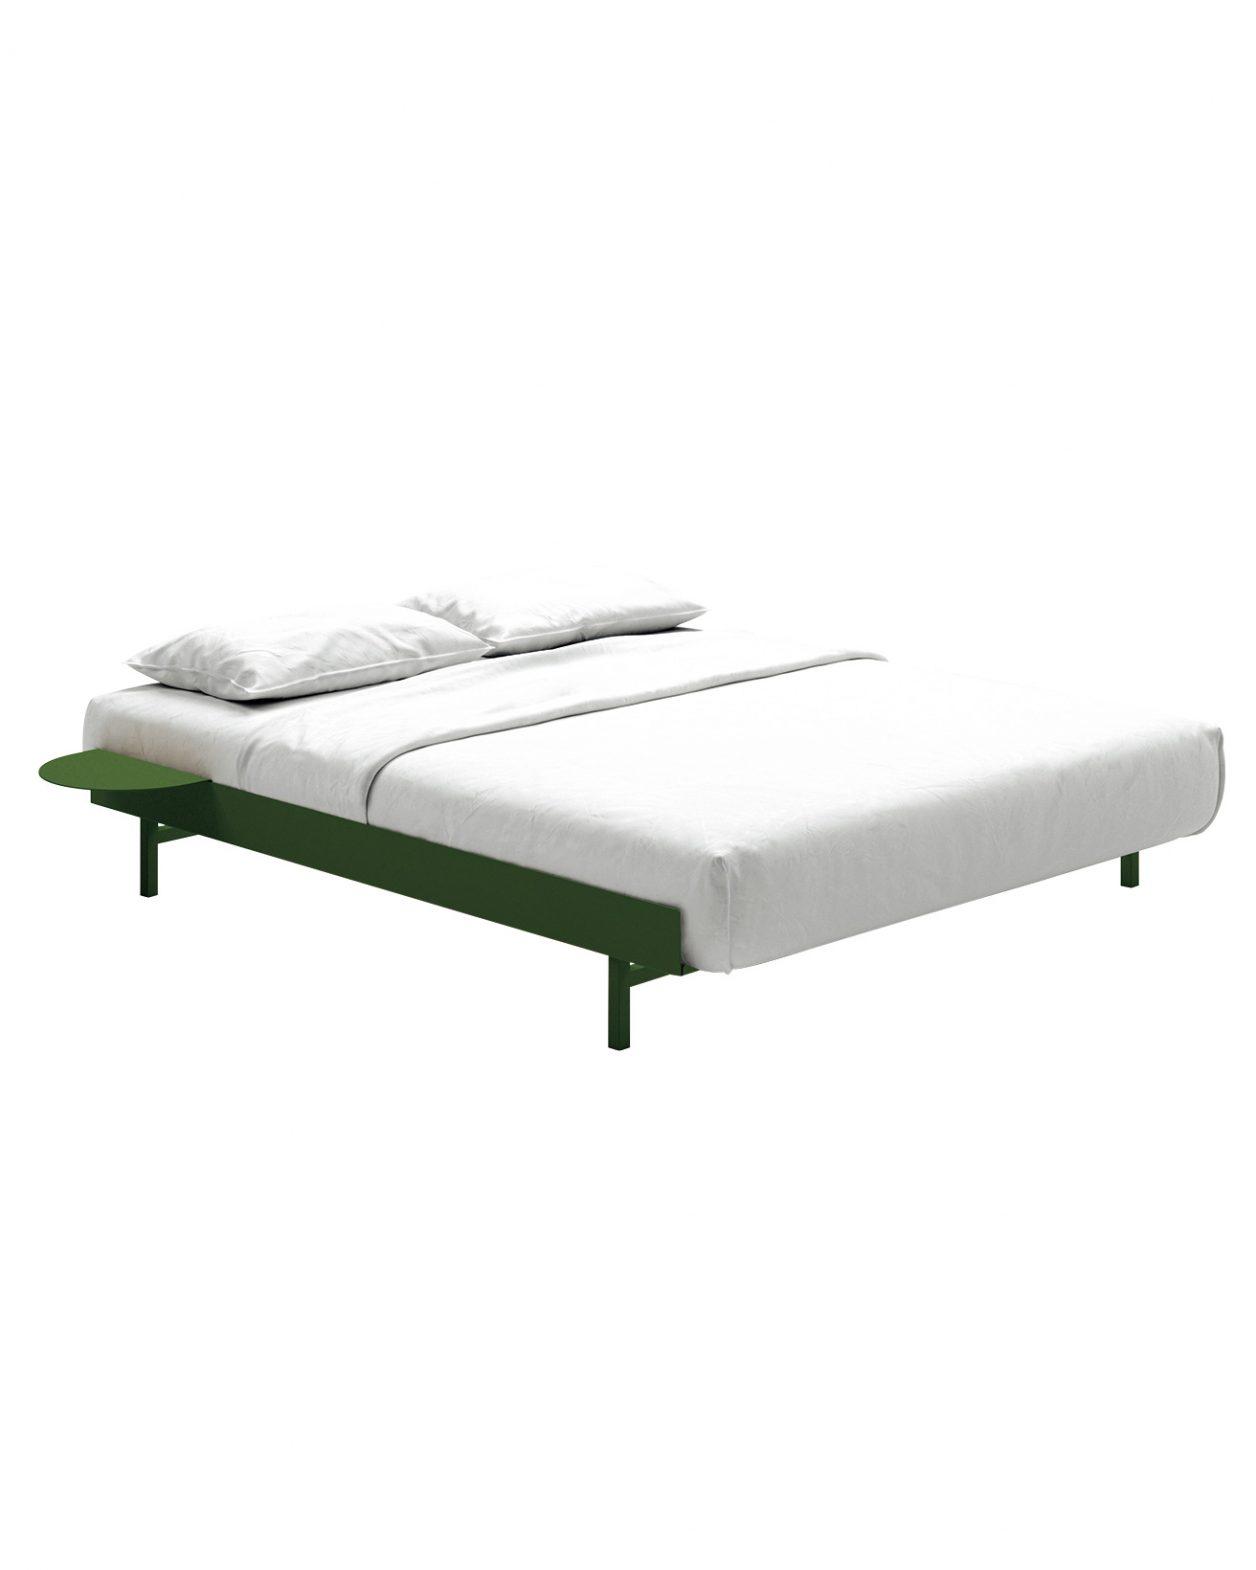 フレームの横幅が90〜180cmまで伸縮する〈MOEBE〉の斬新なベッド。